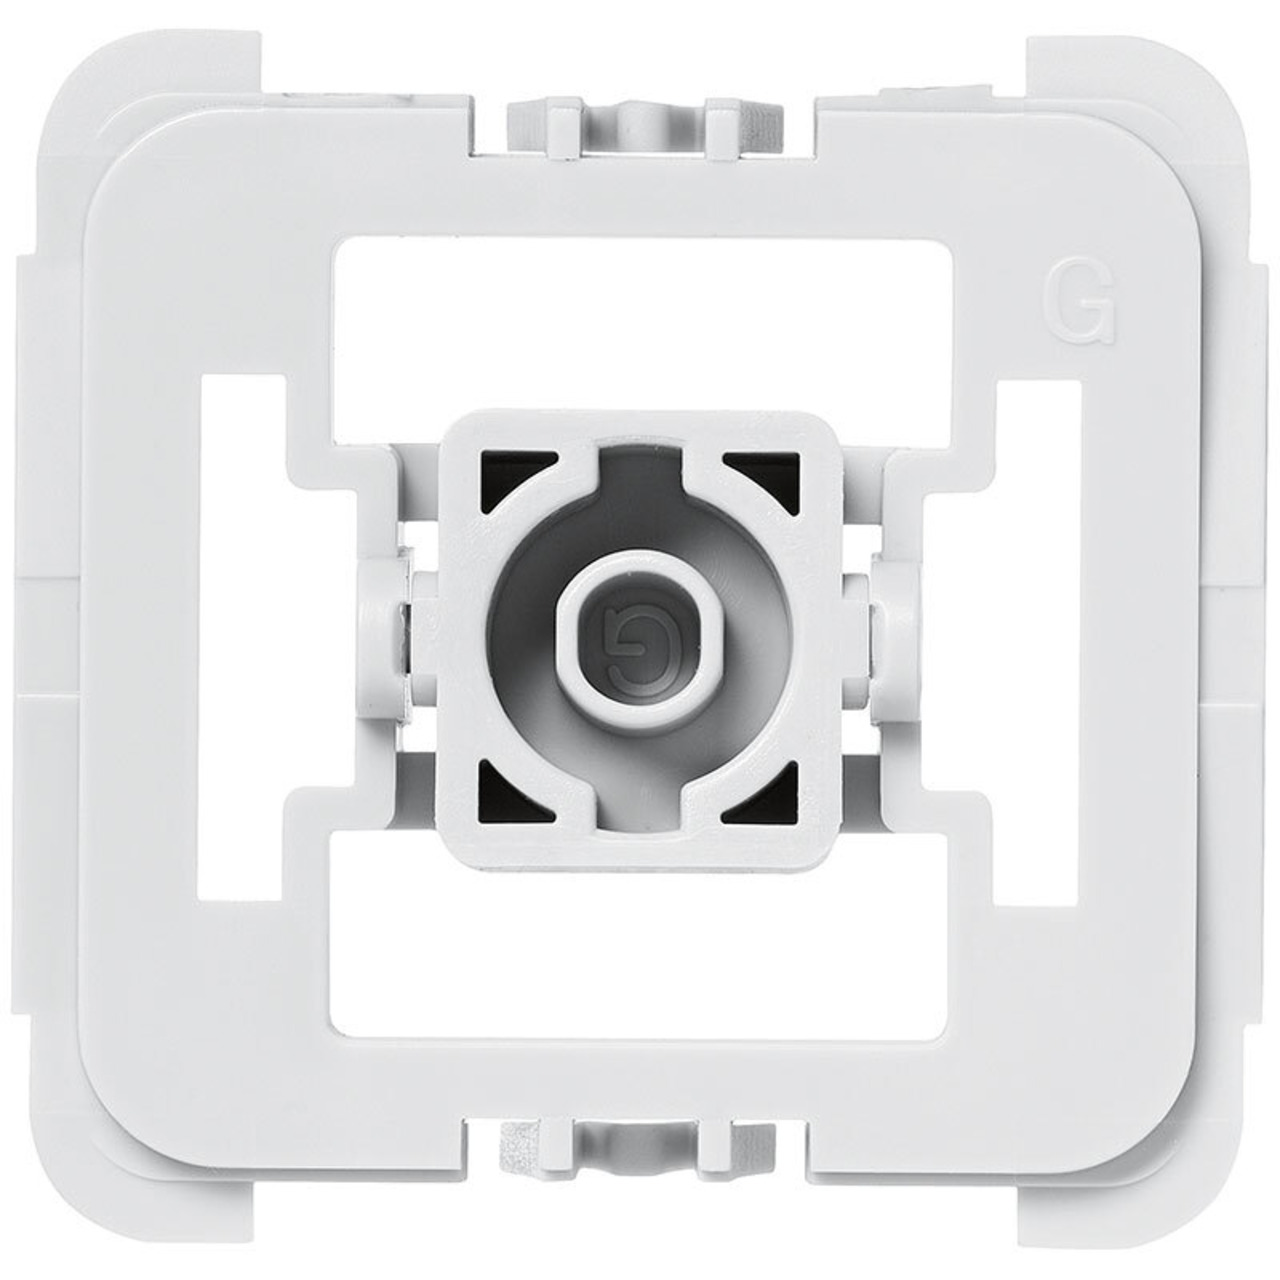 Installationsadapter für Schalter Gira 55- 1 Stück- für Smart Home - Hausautomation